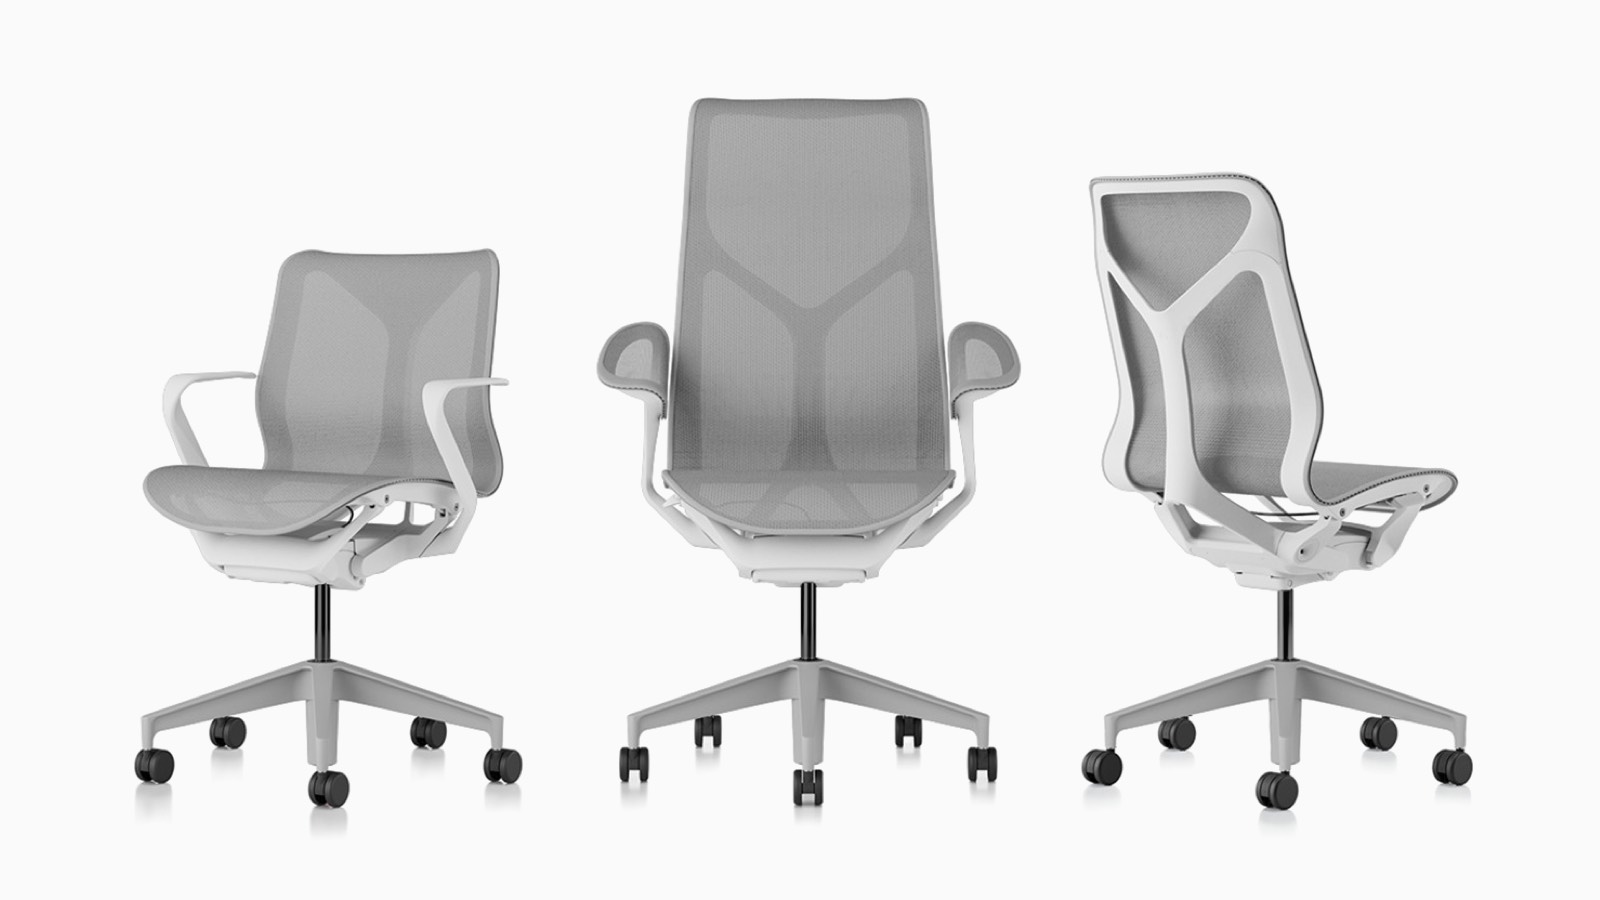 Cadeiras de mesa ergonômicas Low-back, high-back e mid-back Cosm com bases e molduras em materiais Studio White e suspensão em Mineral cinza claro.